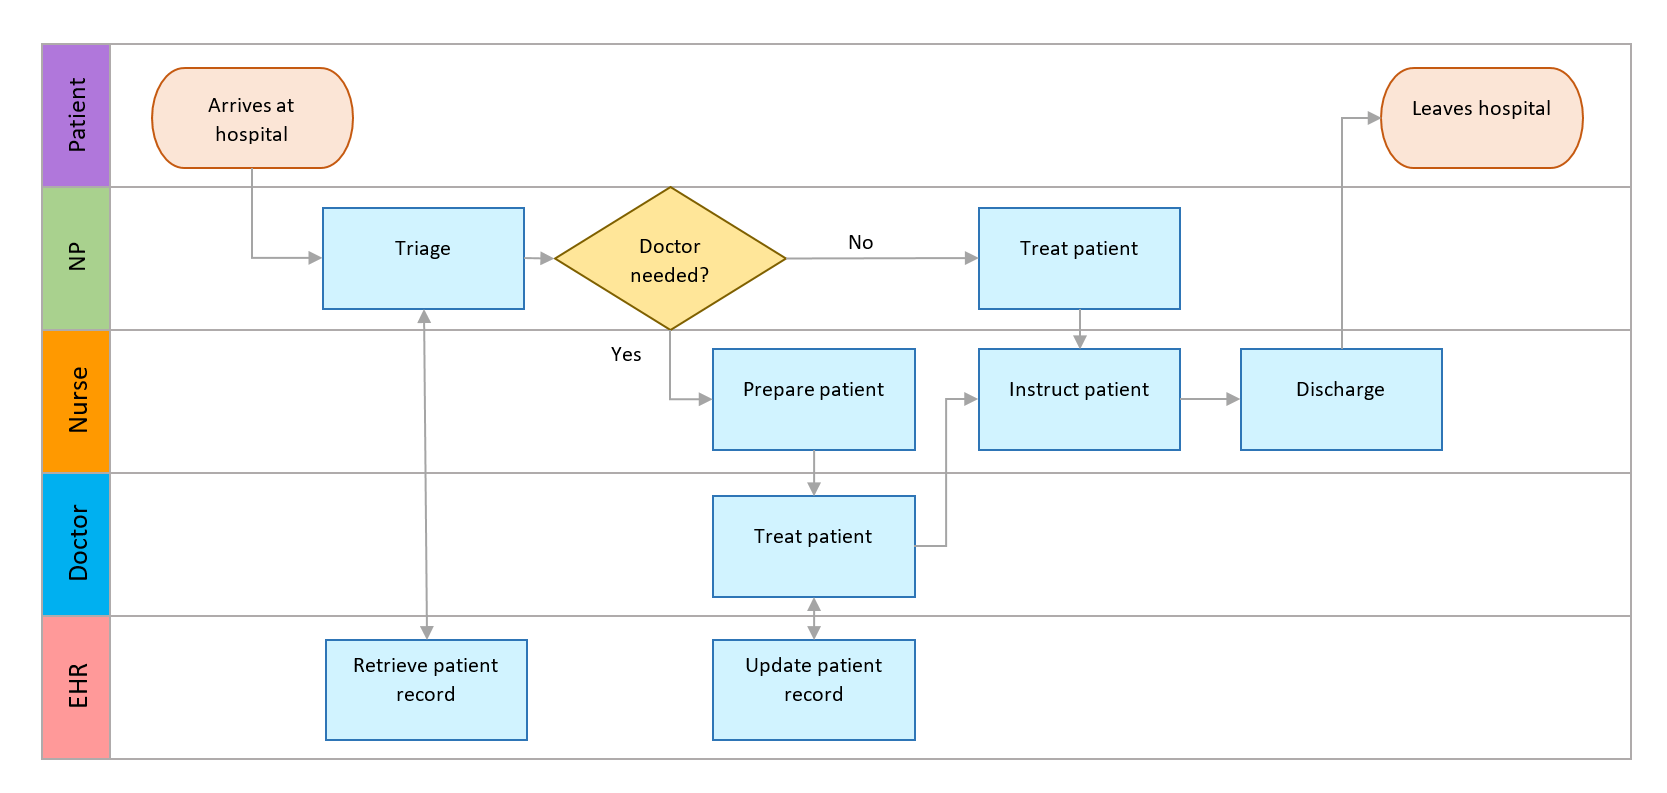 How to make swimlane diagrams in Word + Free swimlane diagram templates